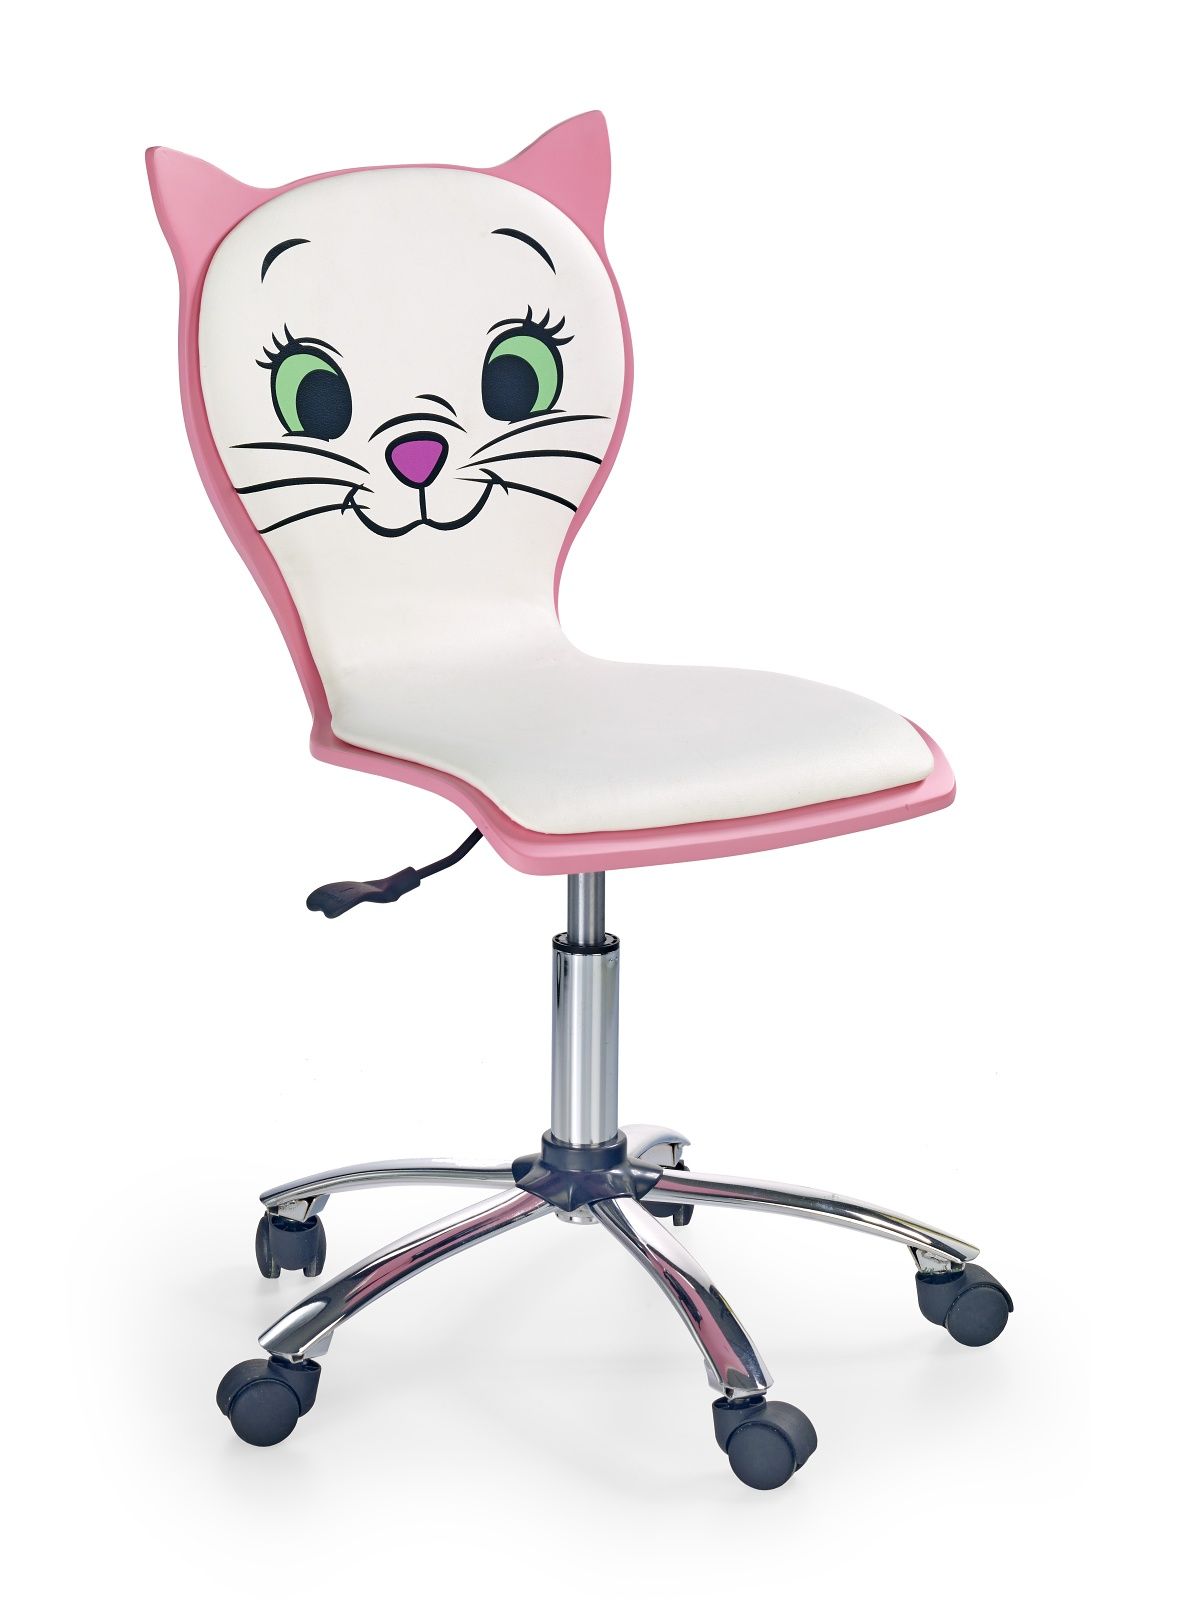 Detská stolička: halmar kitty 2